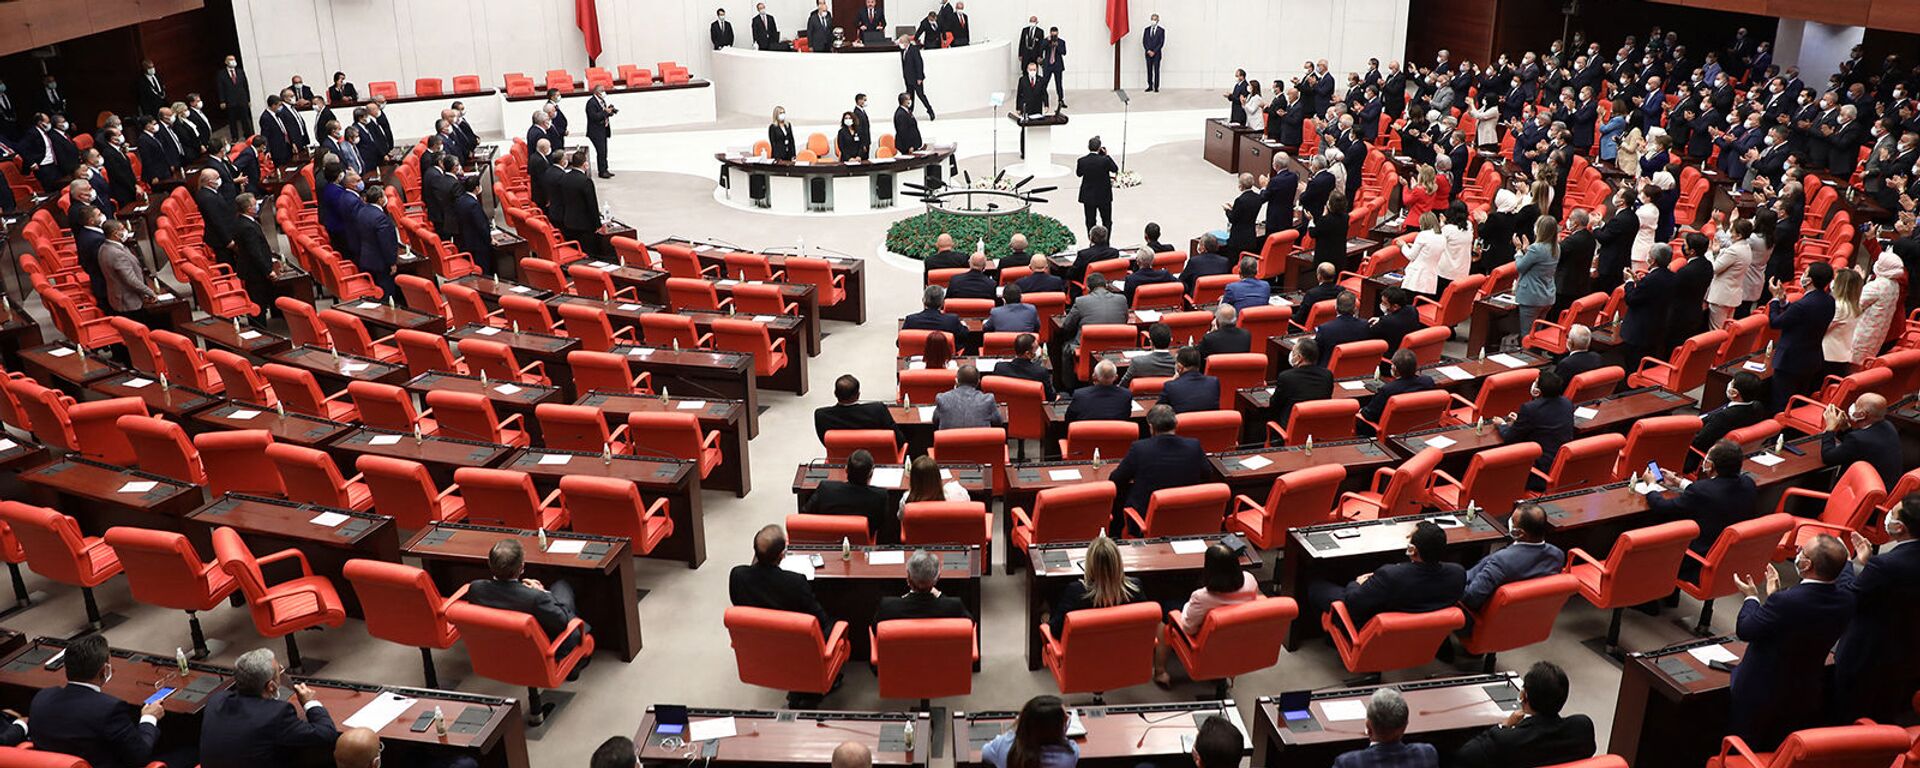 Заседание четвертой законодательной сессии турецкого парламента (1 октября 2020). Анкара - Sputnik Արմենիա, 1920, 24.04.2021